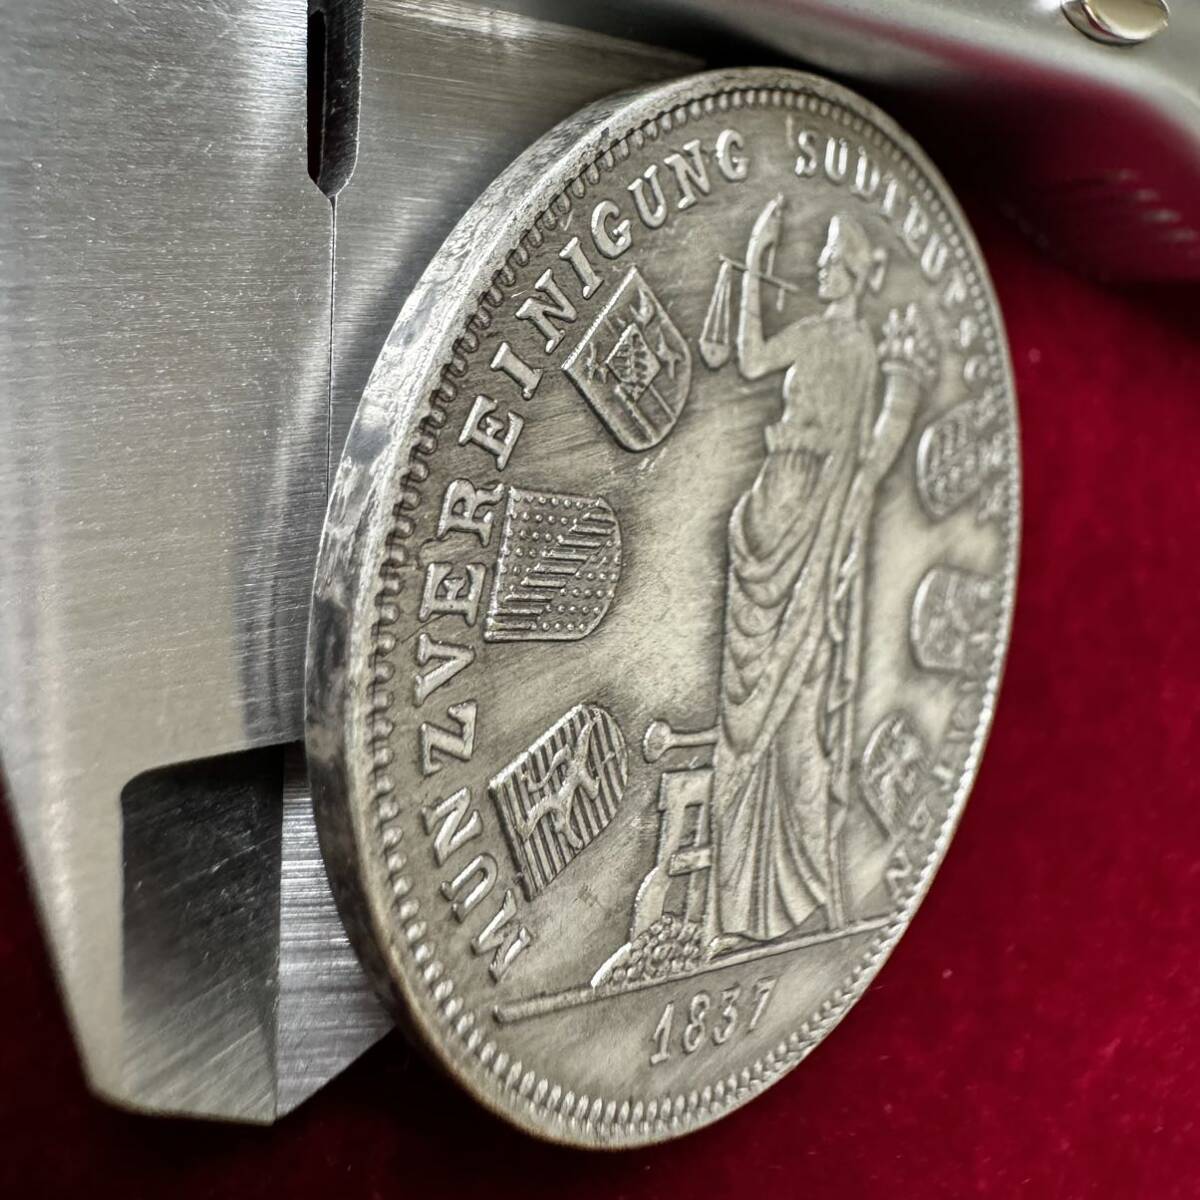 ドイツ フェルドヘルンハレ 硬貨 古銭 1837年 バイエルン王国 ルートヴィヒ1世 「南ドイツ6州通貨同盟」記念 記念幣 コイン 銀貨 海外硬貨_画像3